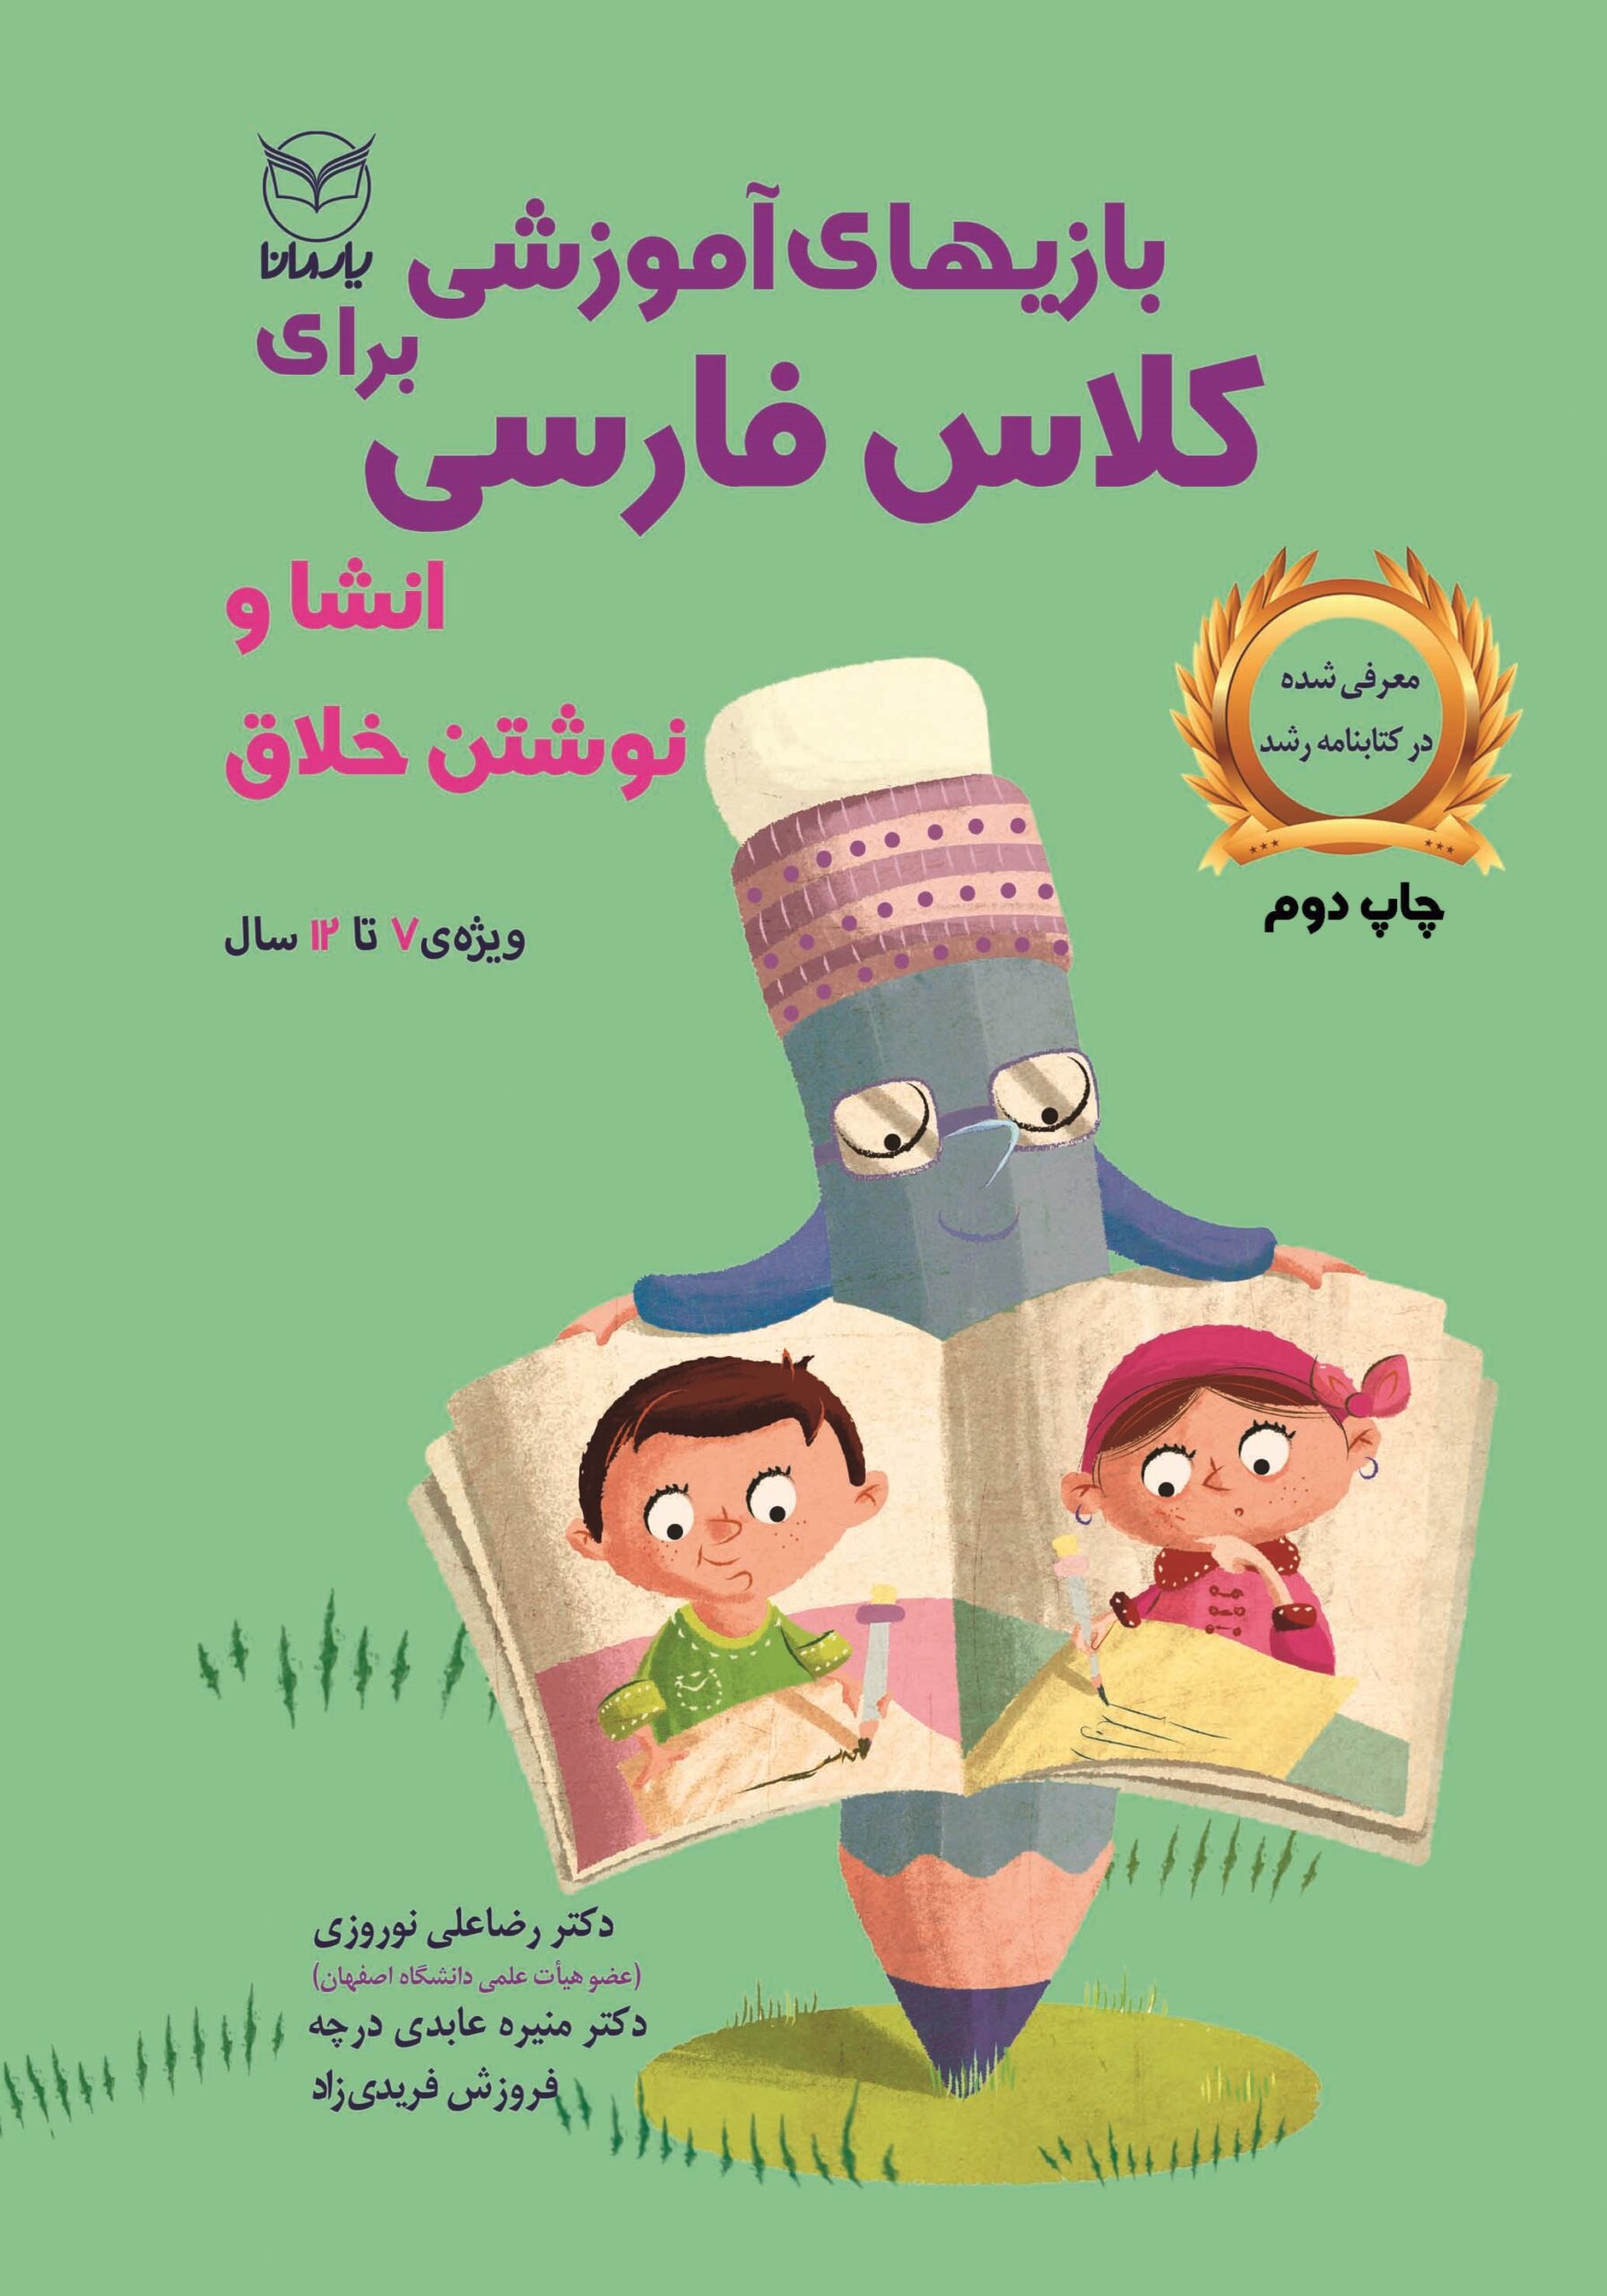 بازی های آموزشی برای کلاس فارسی (انشا و نوشتن خلاق)